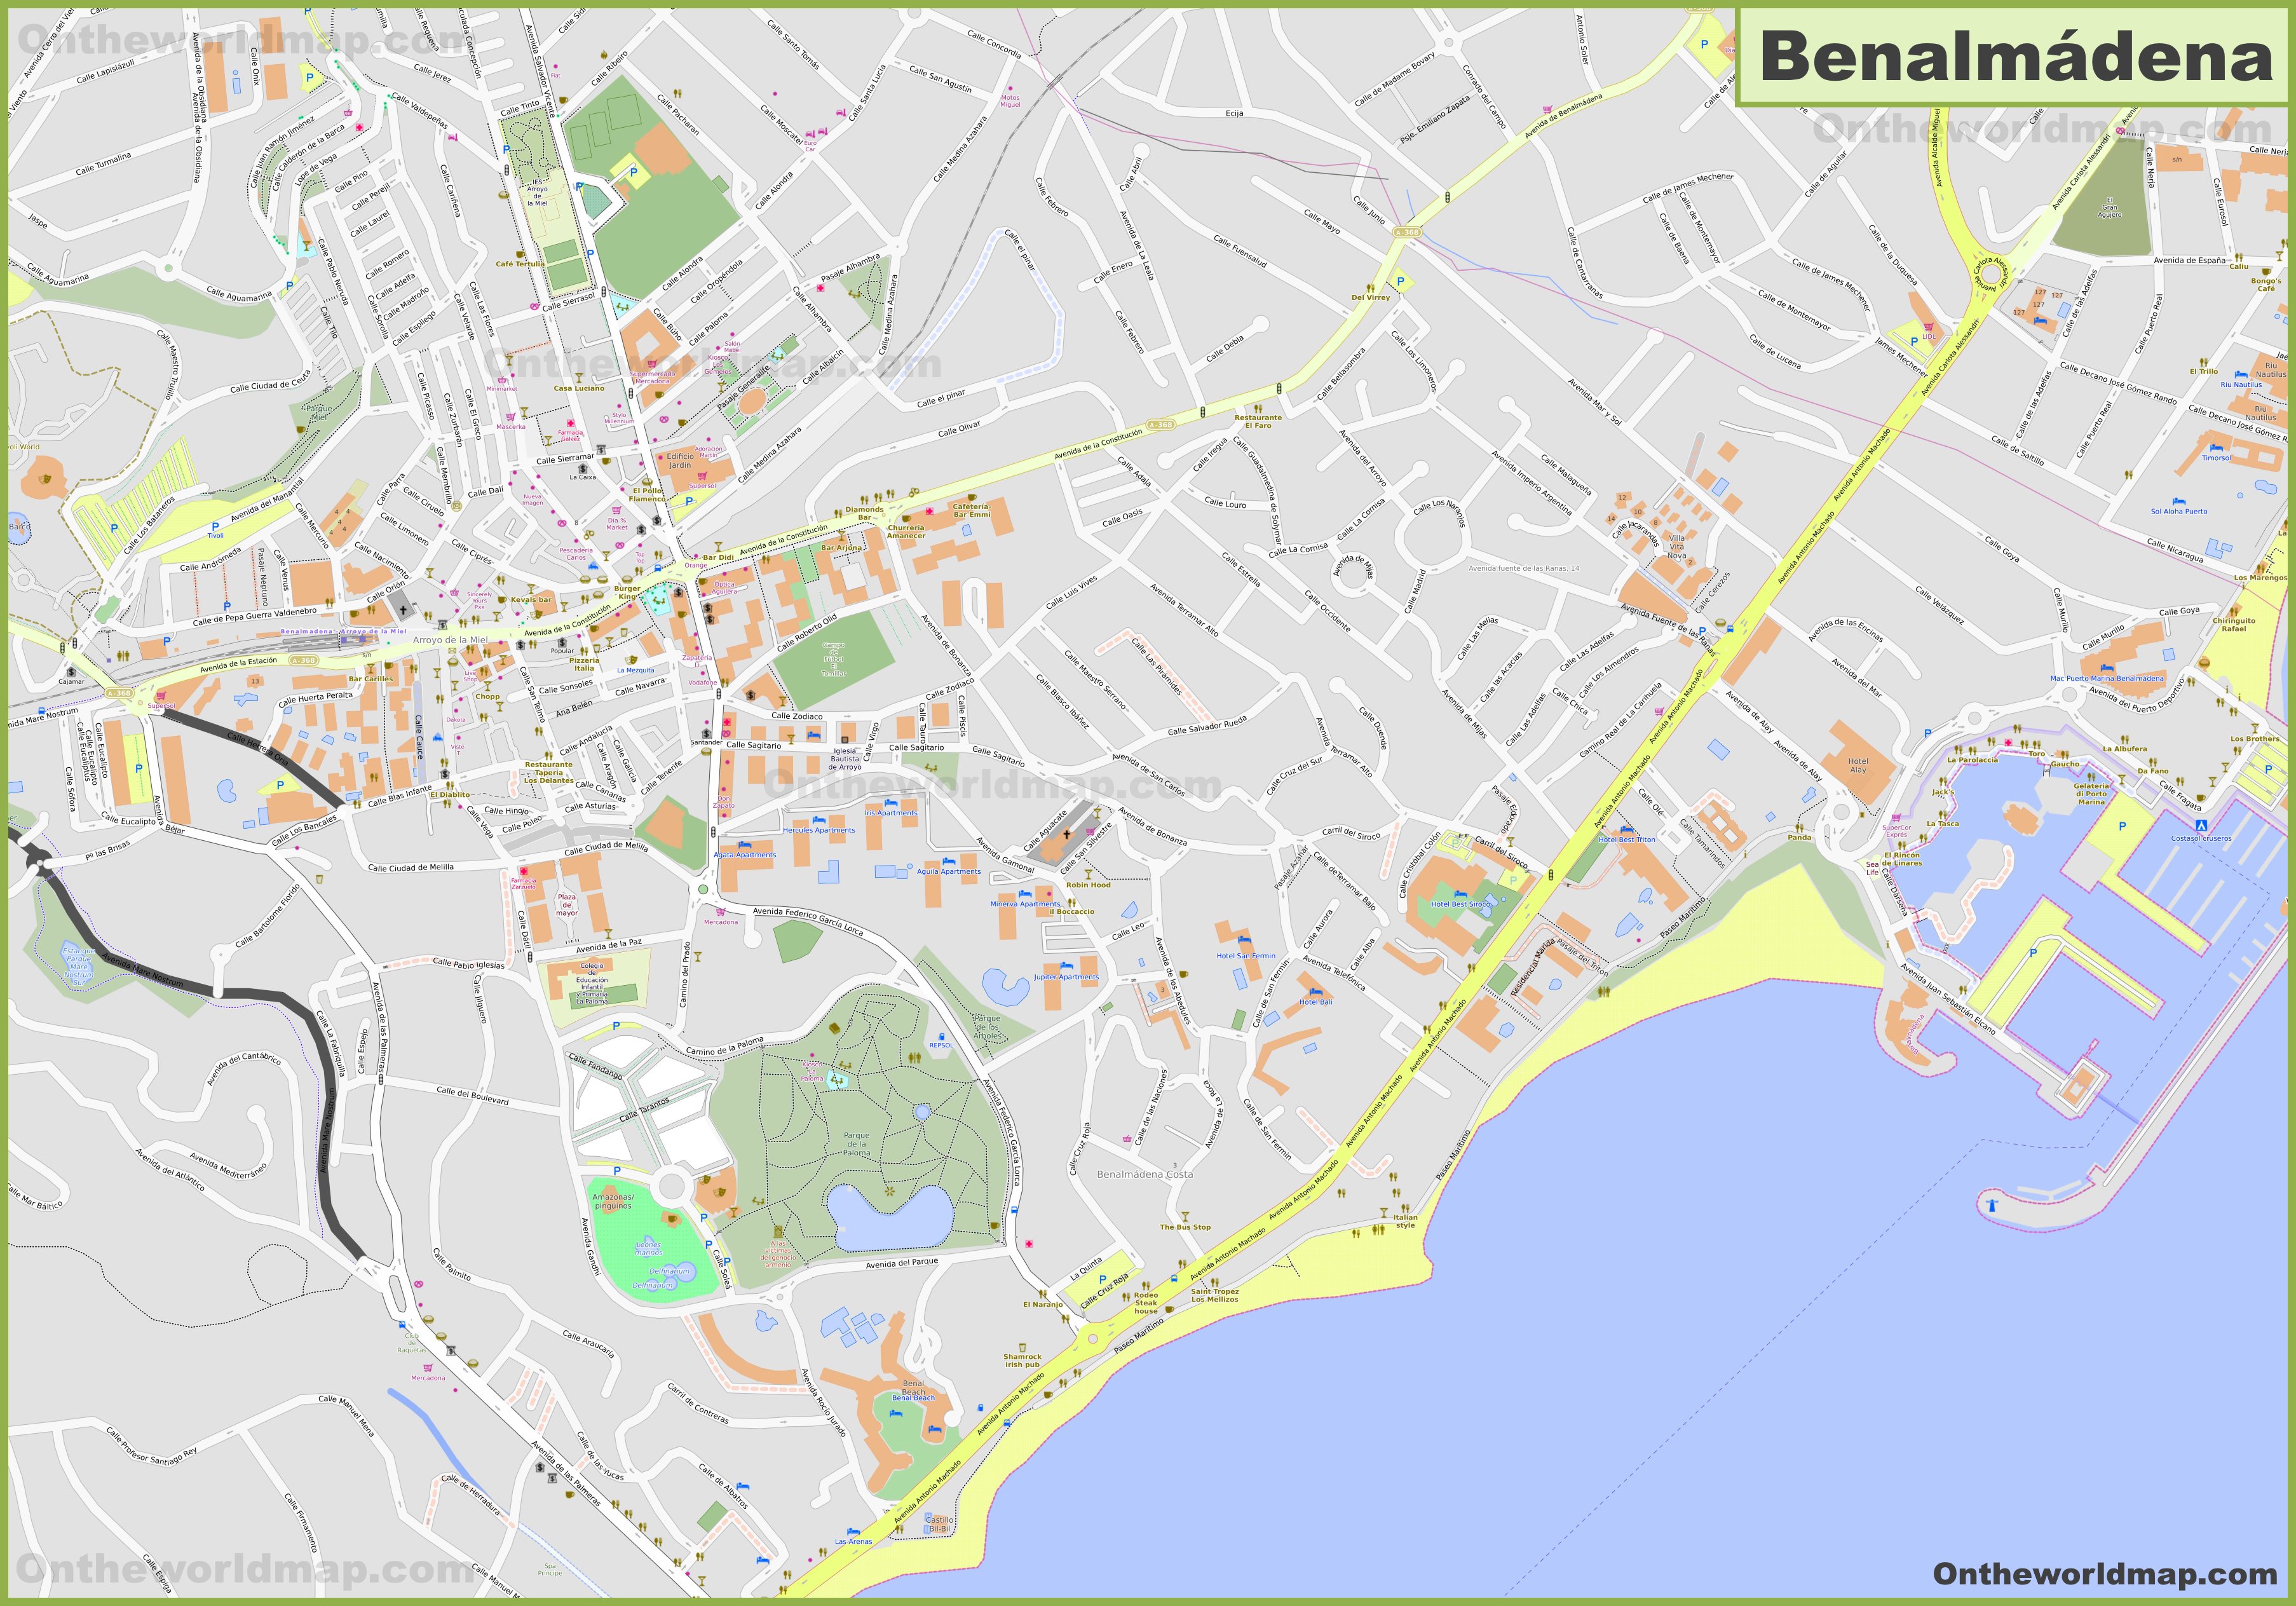 Detailed map of Benalmadena - Ontheworldmap.com